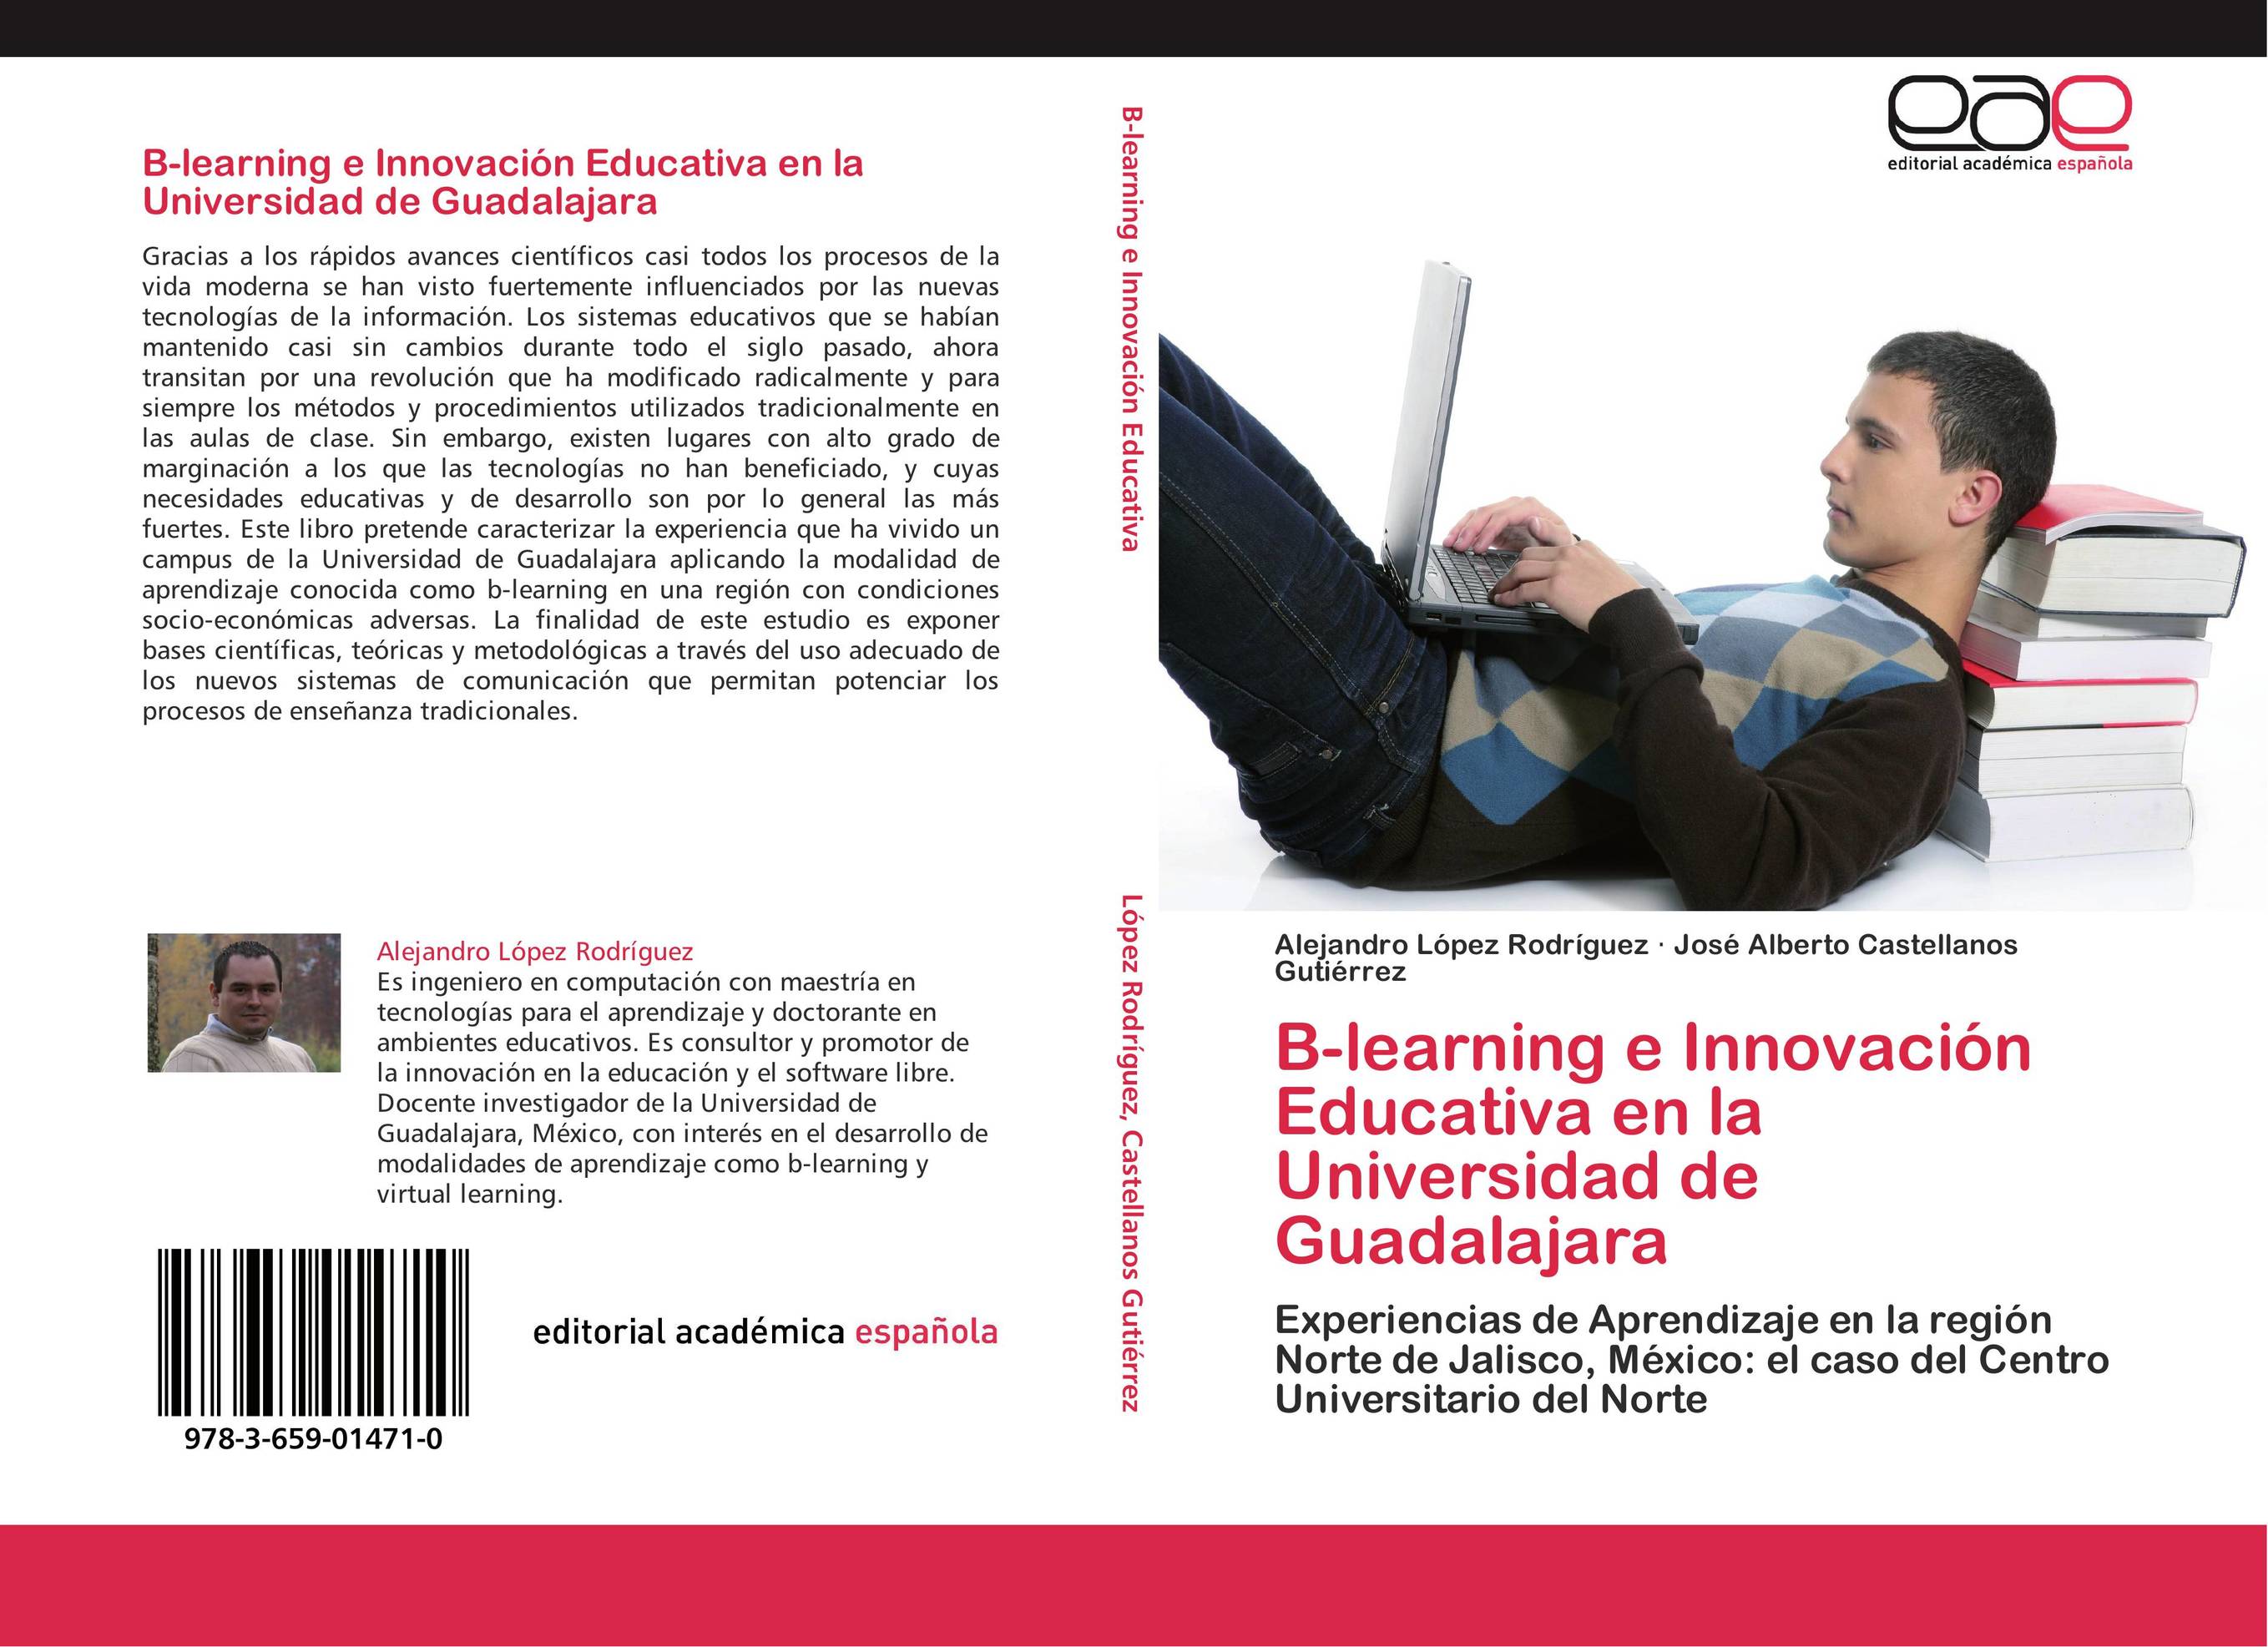 B-learning e Innovación Educativa en la Universidad de Guadalajara